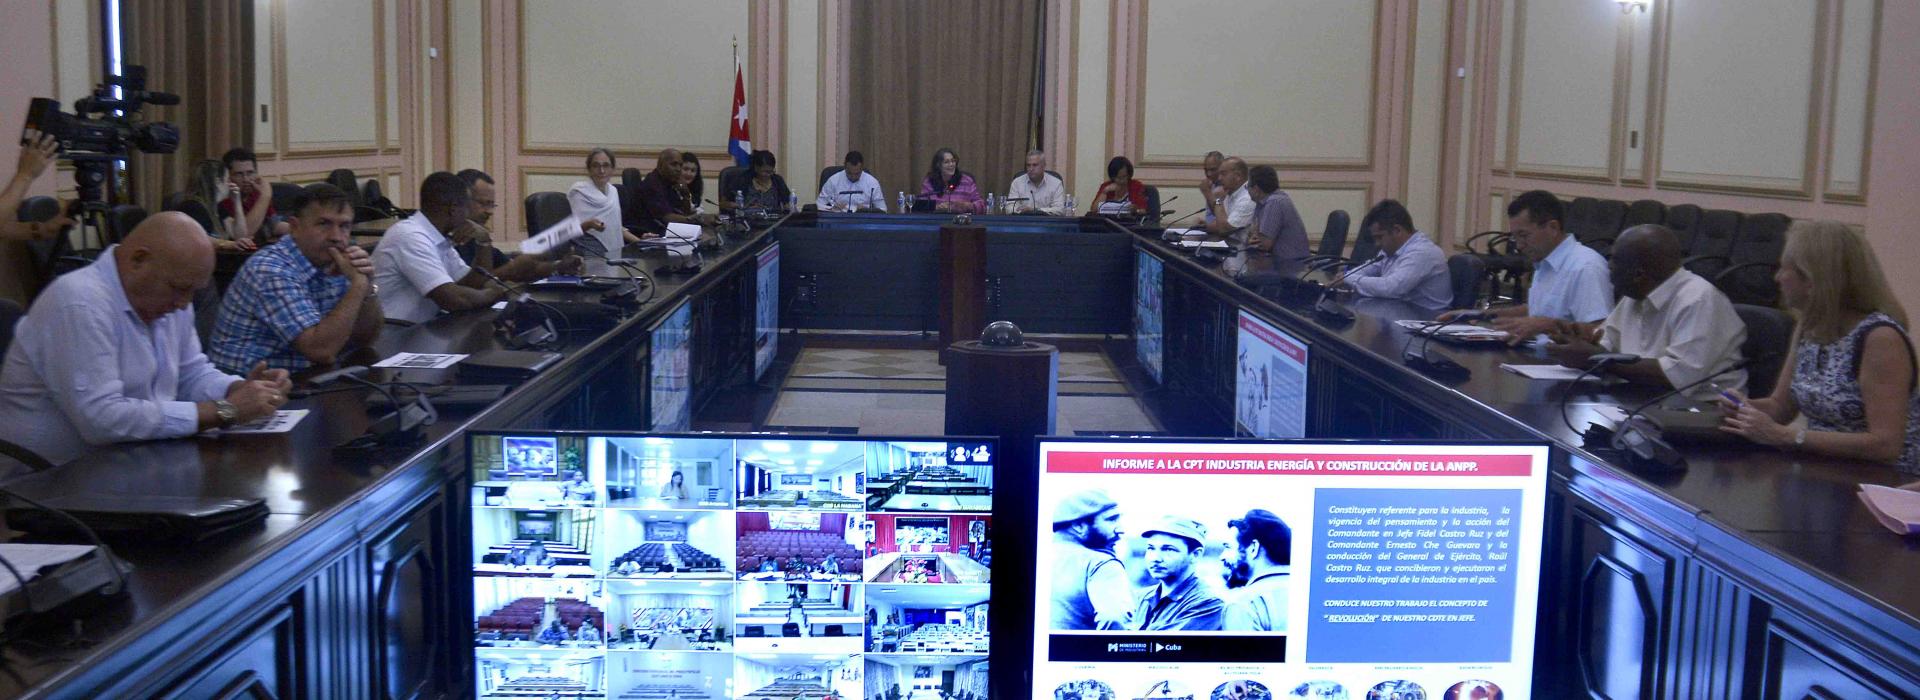 La Estrategia Económica-Social y las proyecciones del Gobierno para corregir distorsiones y reimpulsar la economía, como guía para la conducción del trabajo en la industria cubana